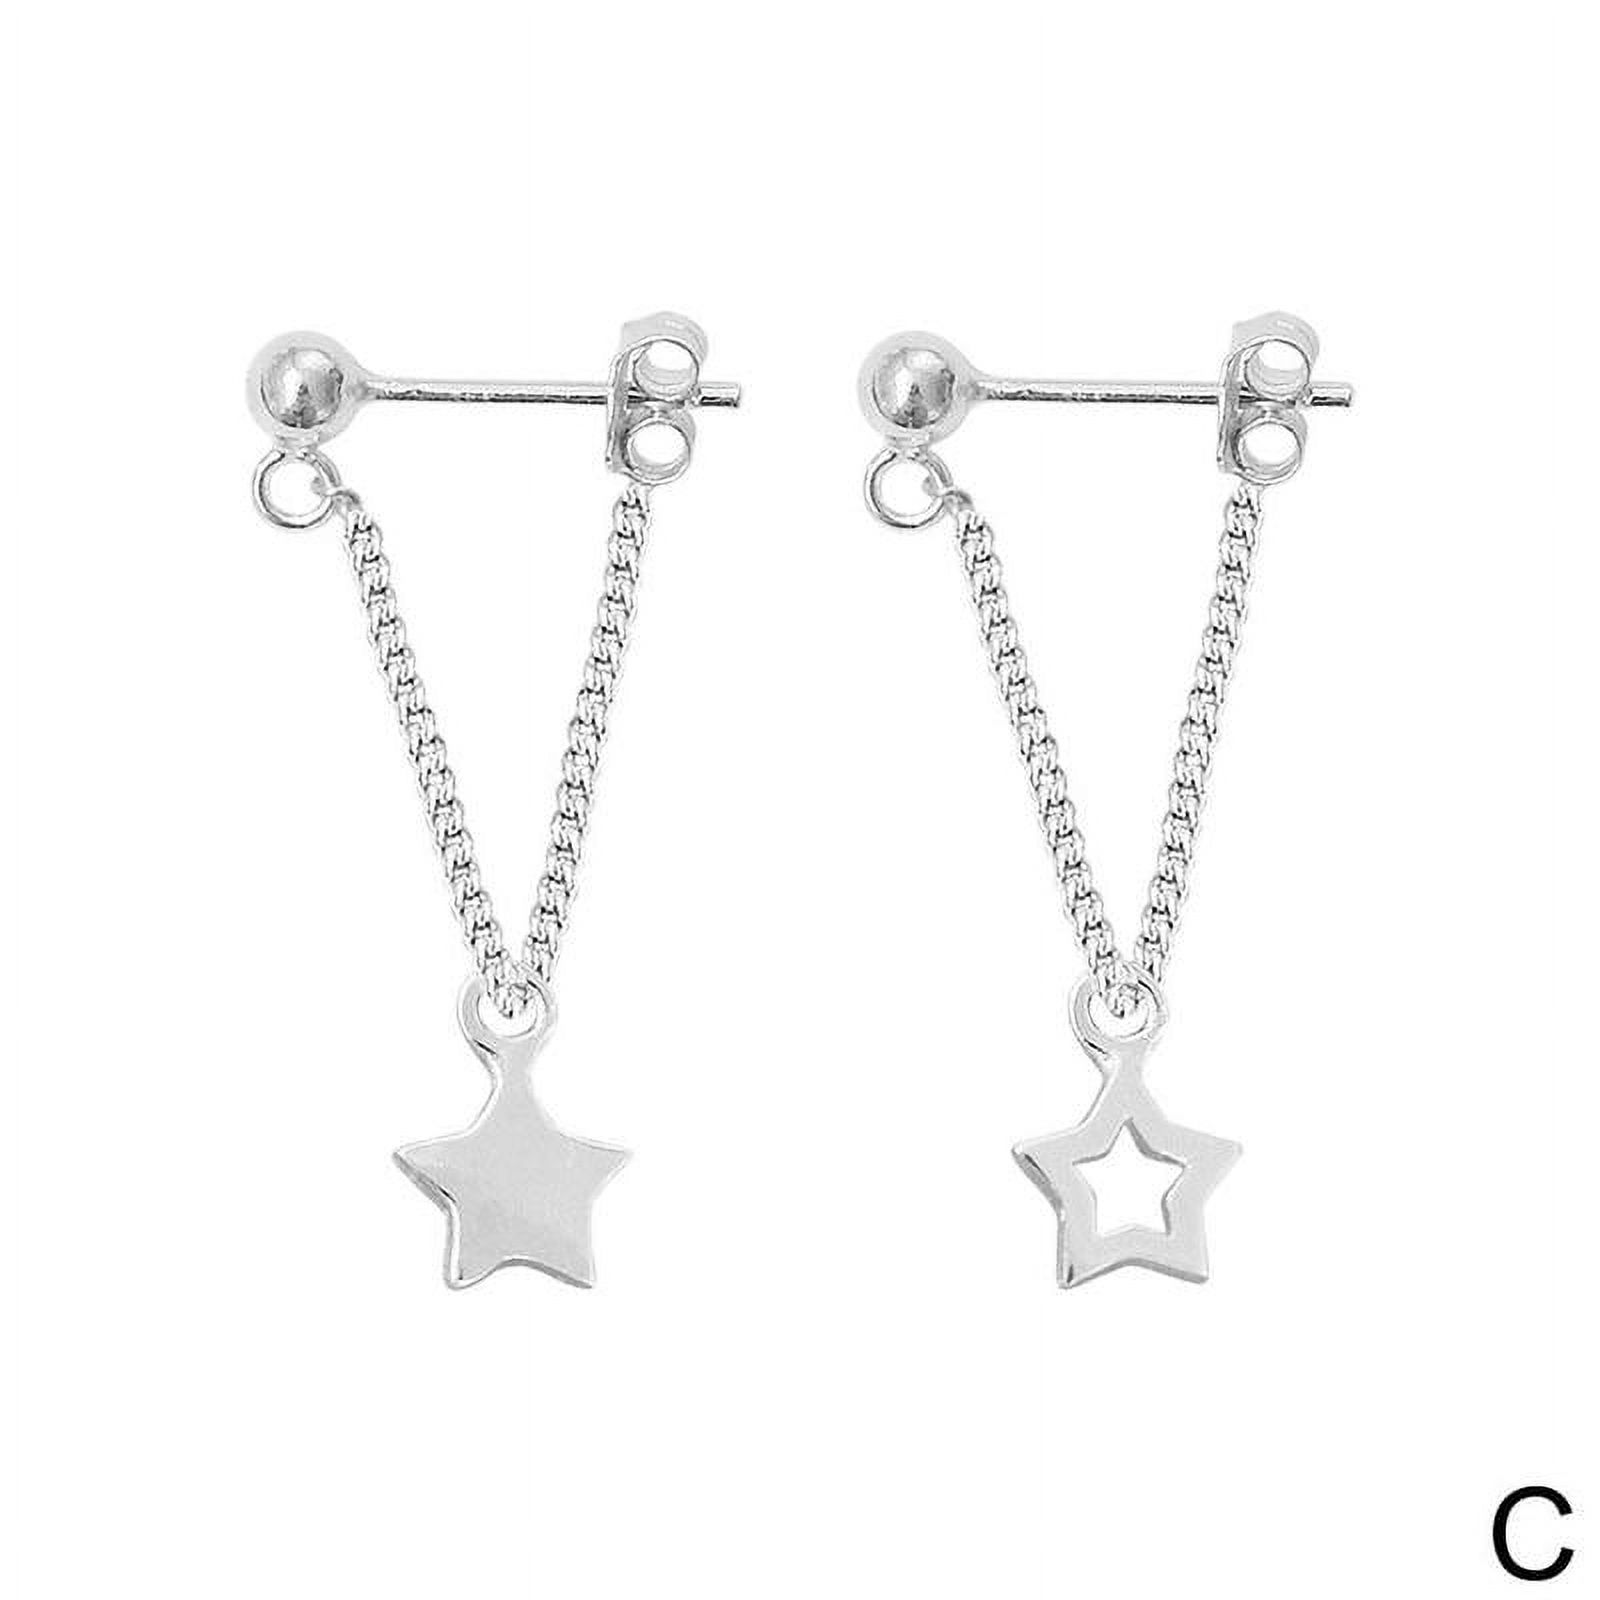 Silver Earrings Triangle Chain Drop Stud Earrings Women Butterfly Heart Star Crystal Dangle Earrings Studs Metal Chain Bead Earrings Jewelry Gifts H7F4 - image 1 of 9